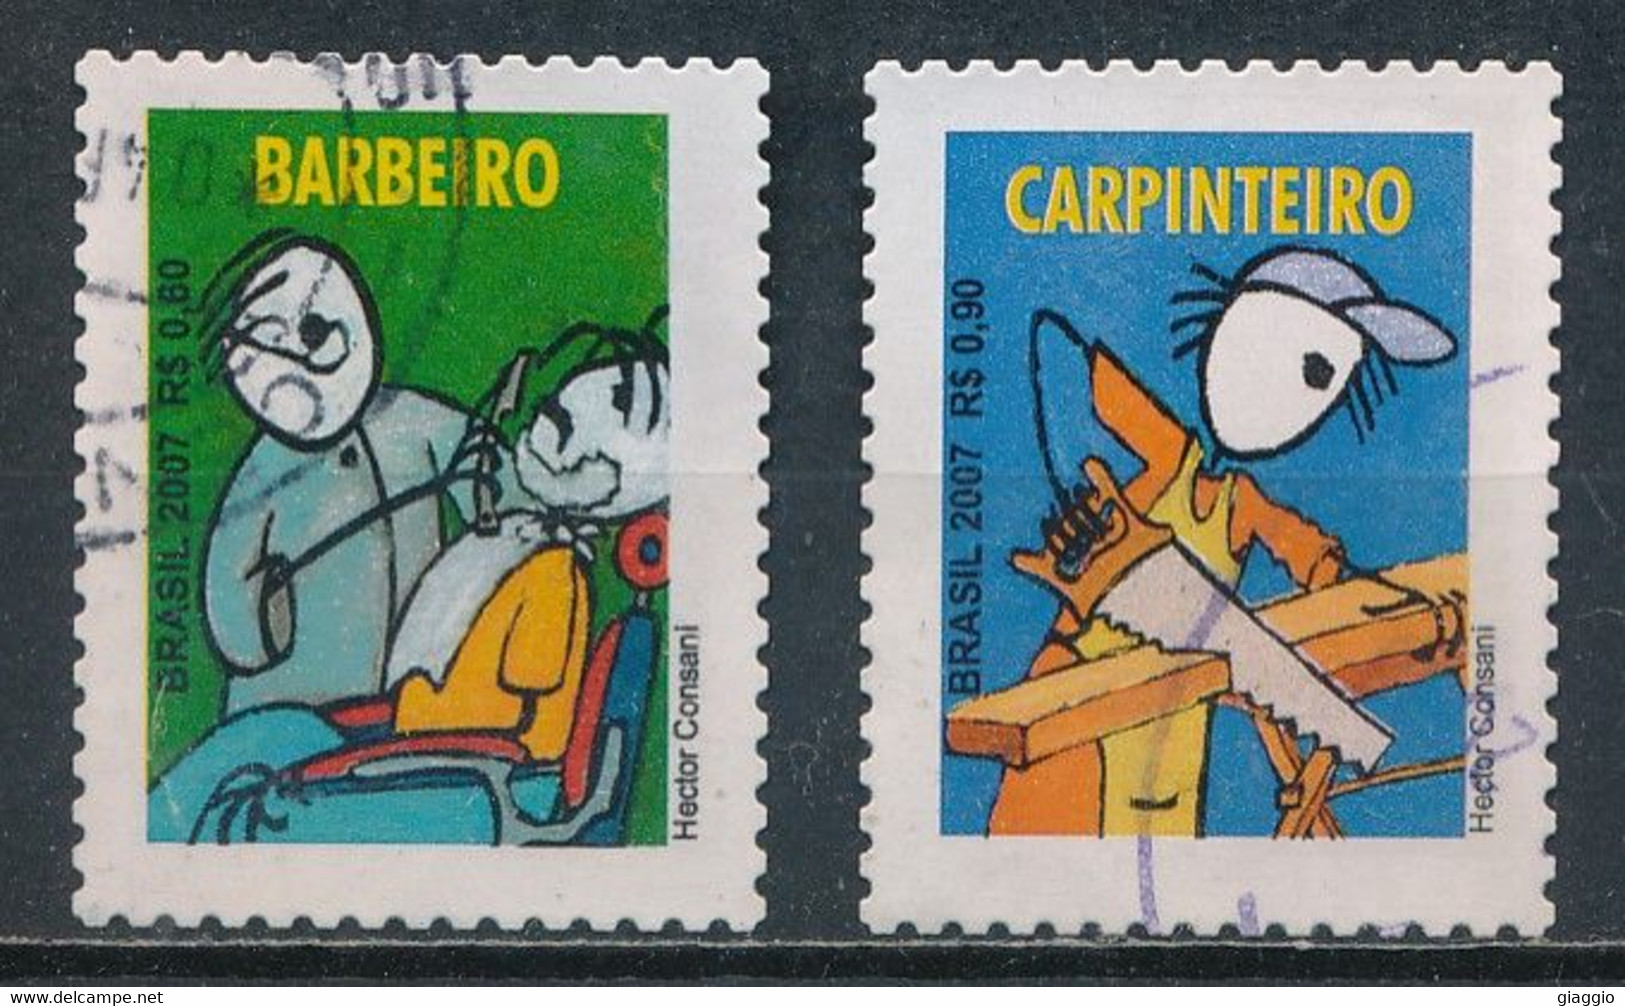 °°° BRASIL - Y&T N°2987/88 - 2007 °°° - Used Stamps